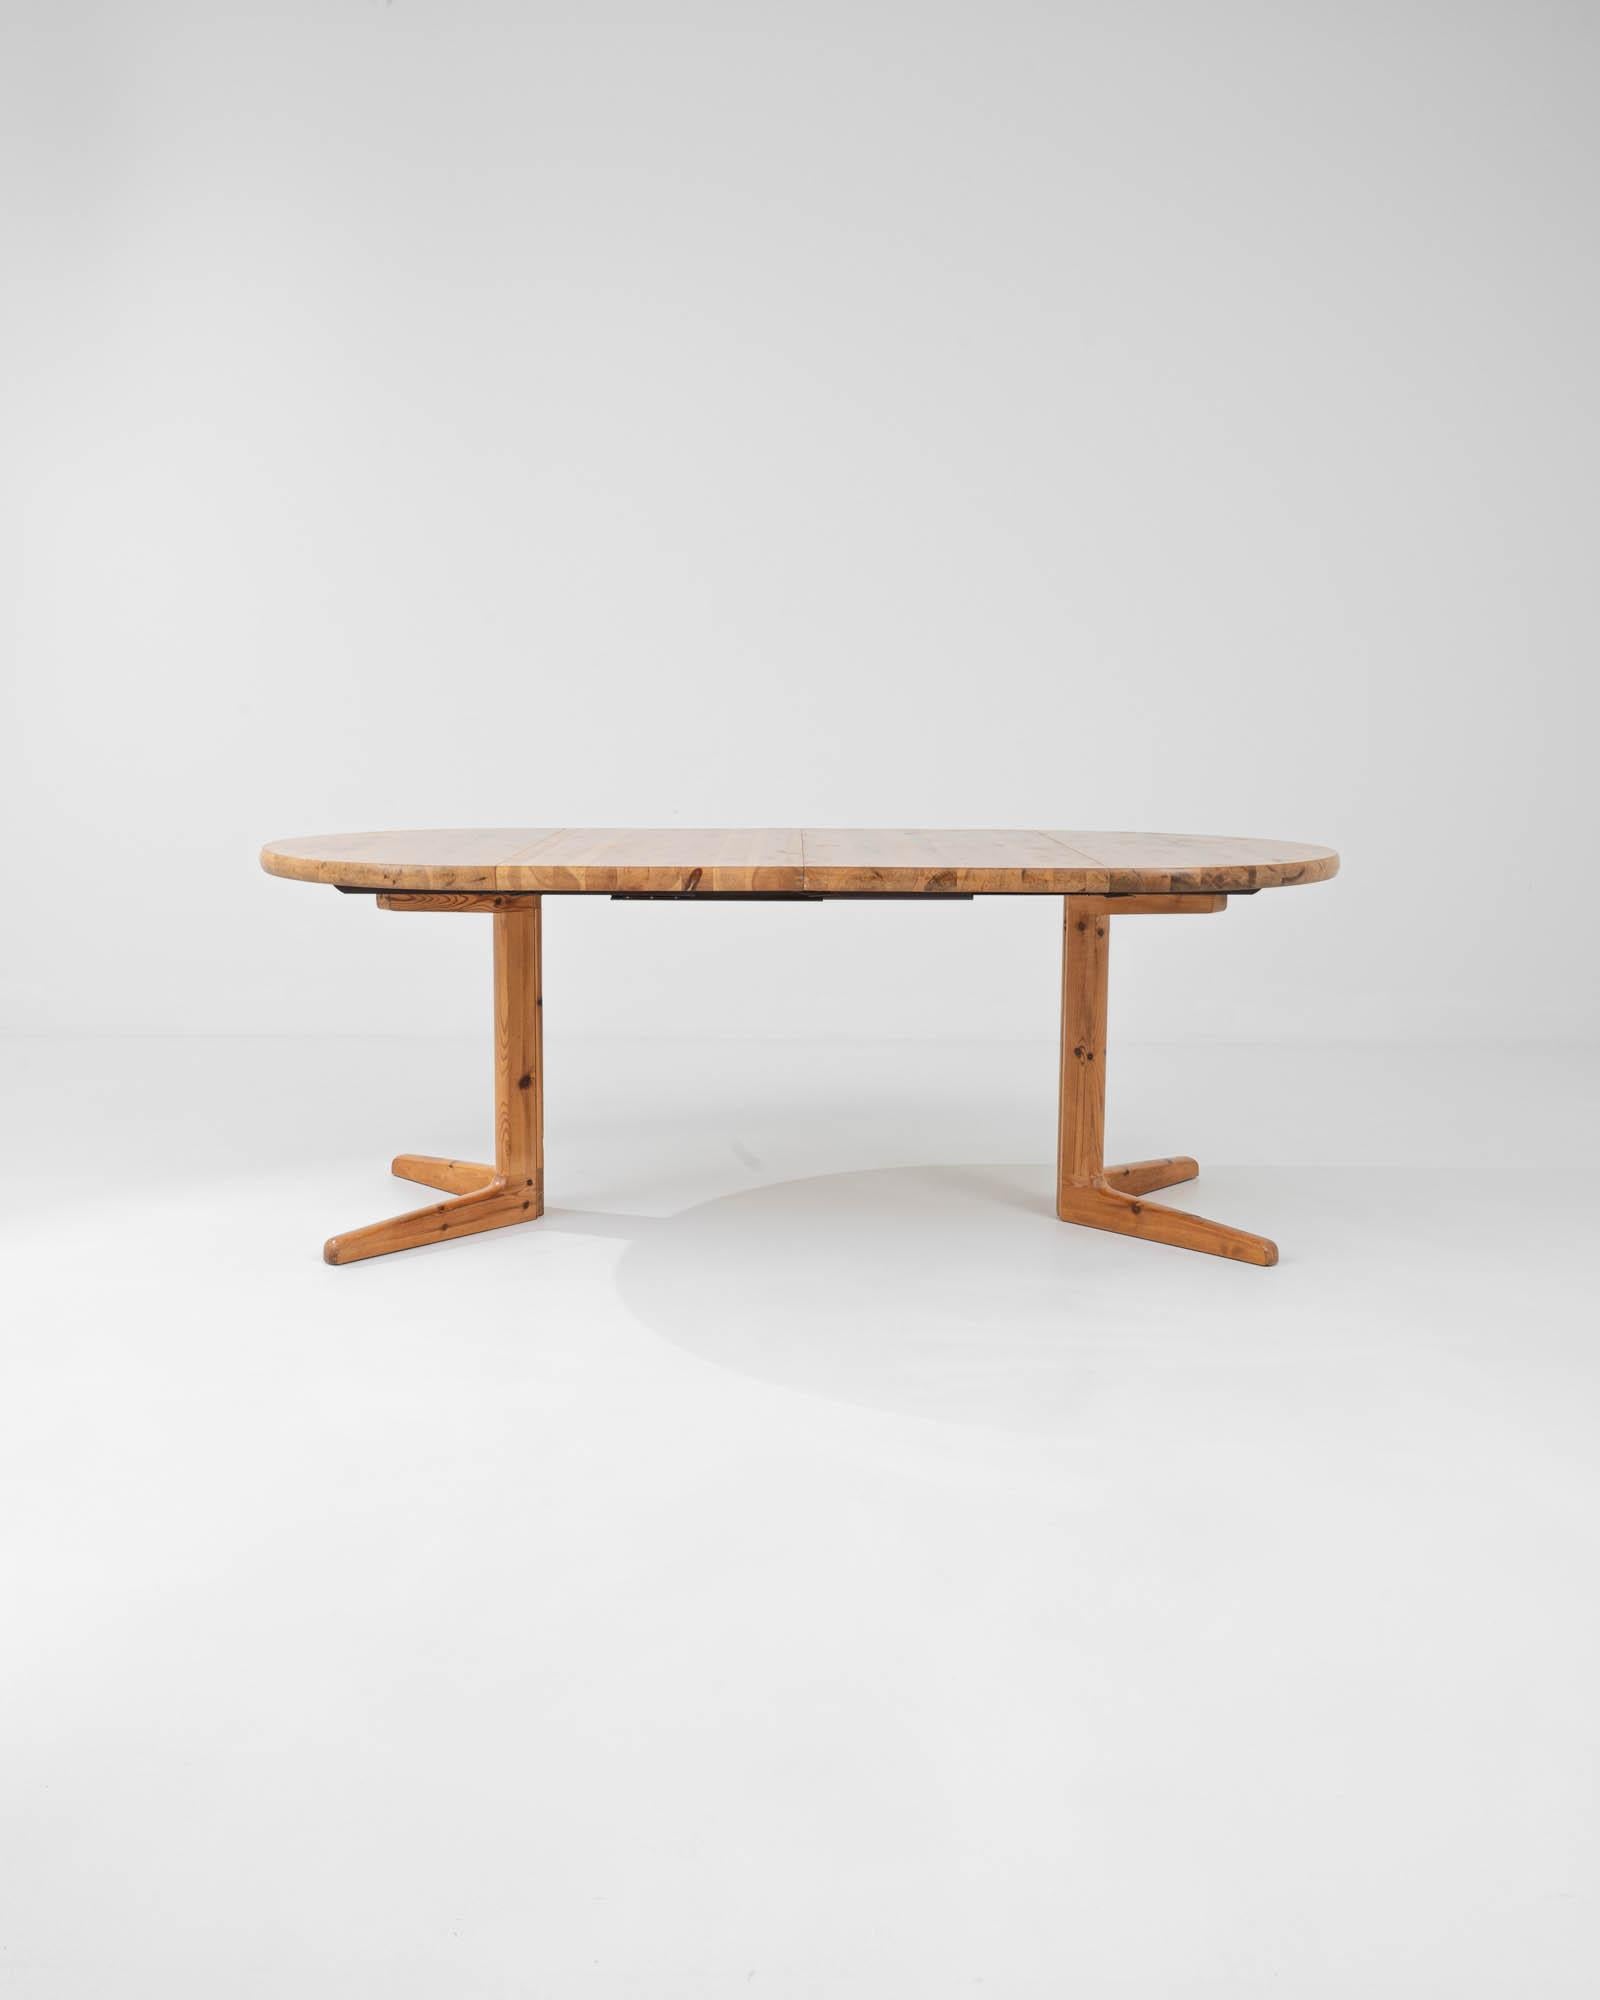 Entdecken Sie die perfekte Verschmelzung von Funktionalität und Kunst mit dem 20th Century Danish Wooden Dining Table von Rainer Daumiller. Mit seiner organischen Schlichtheit und robusten Konstruktion wertet dieses Möbelstück jedes Esszimmer auf